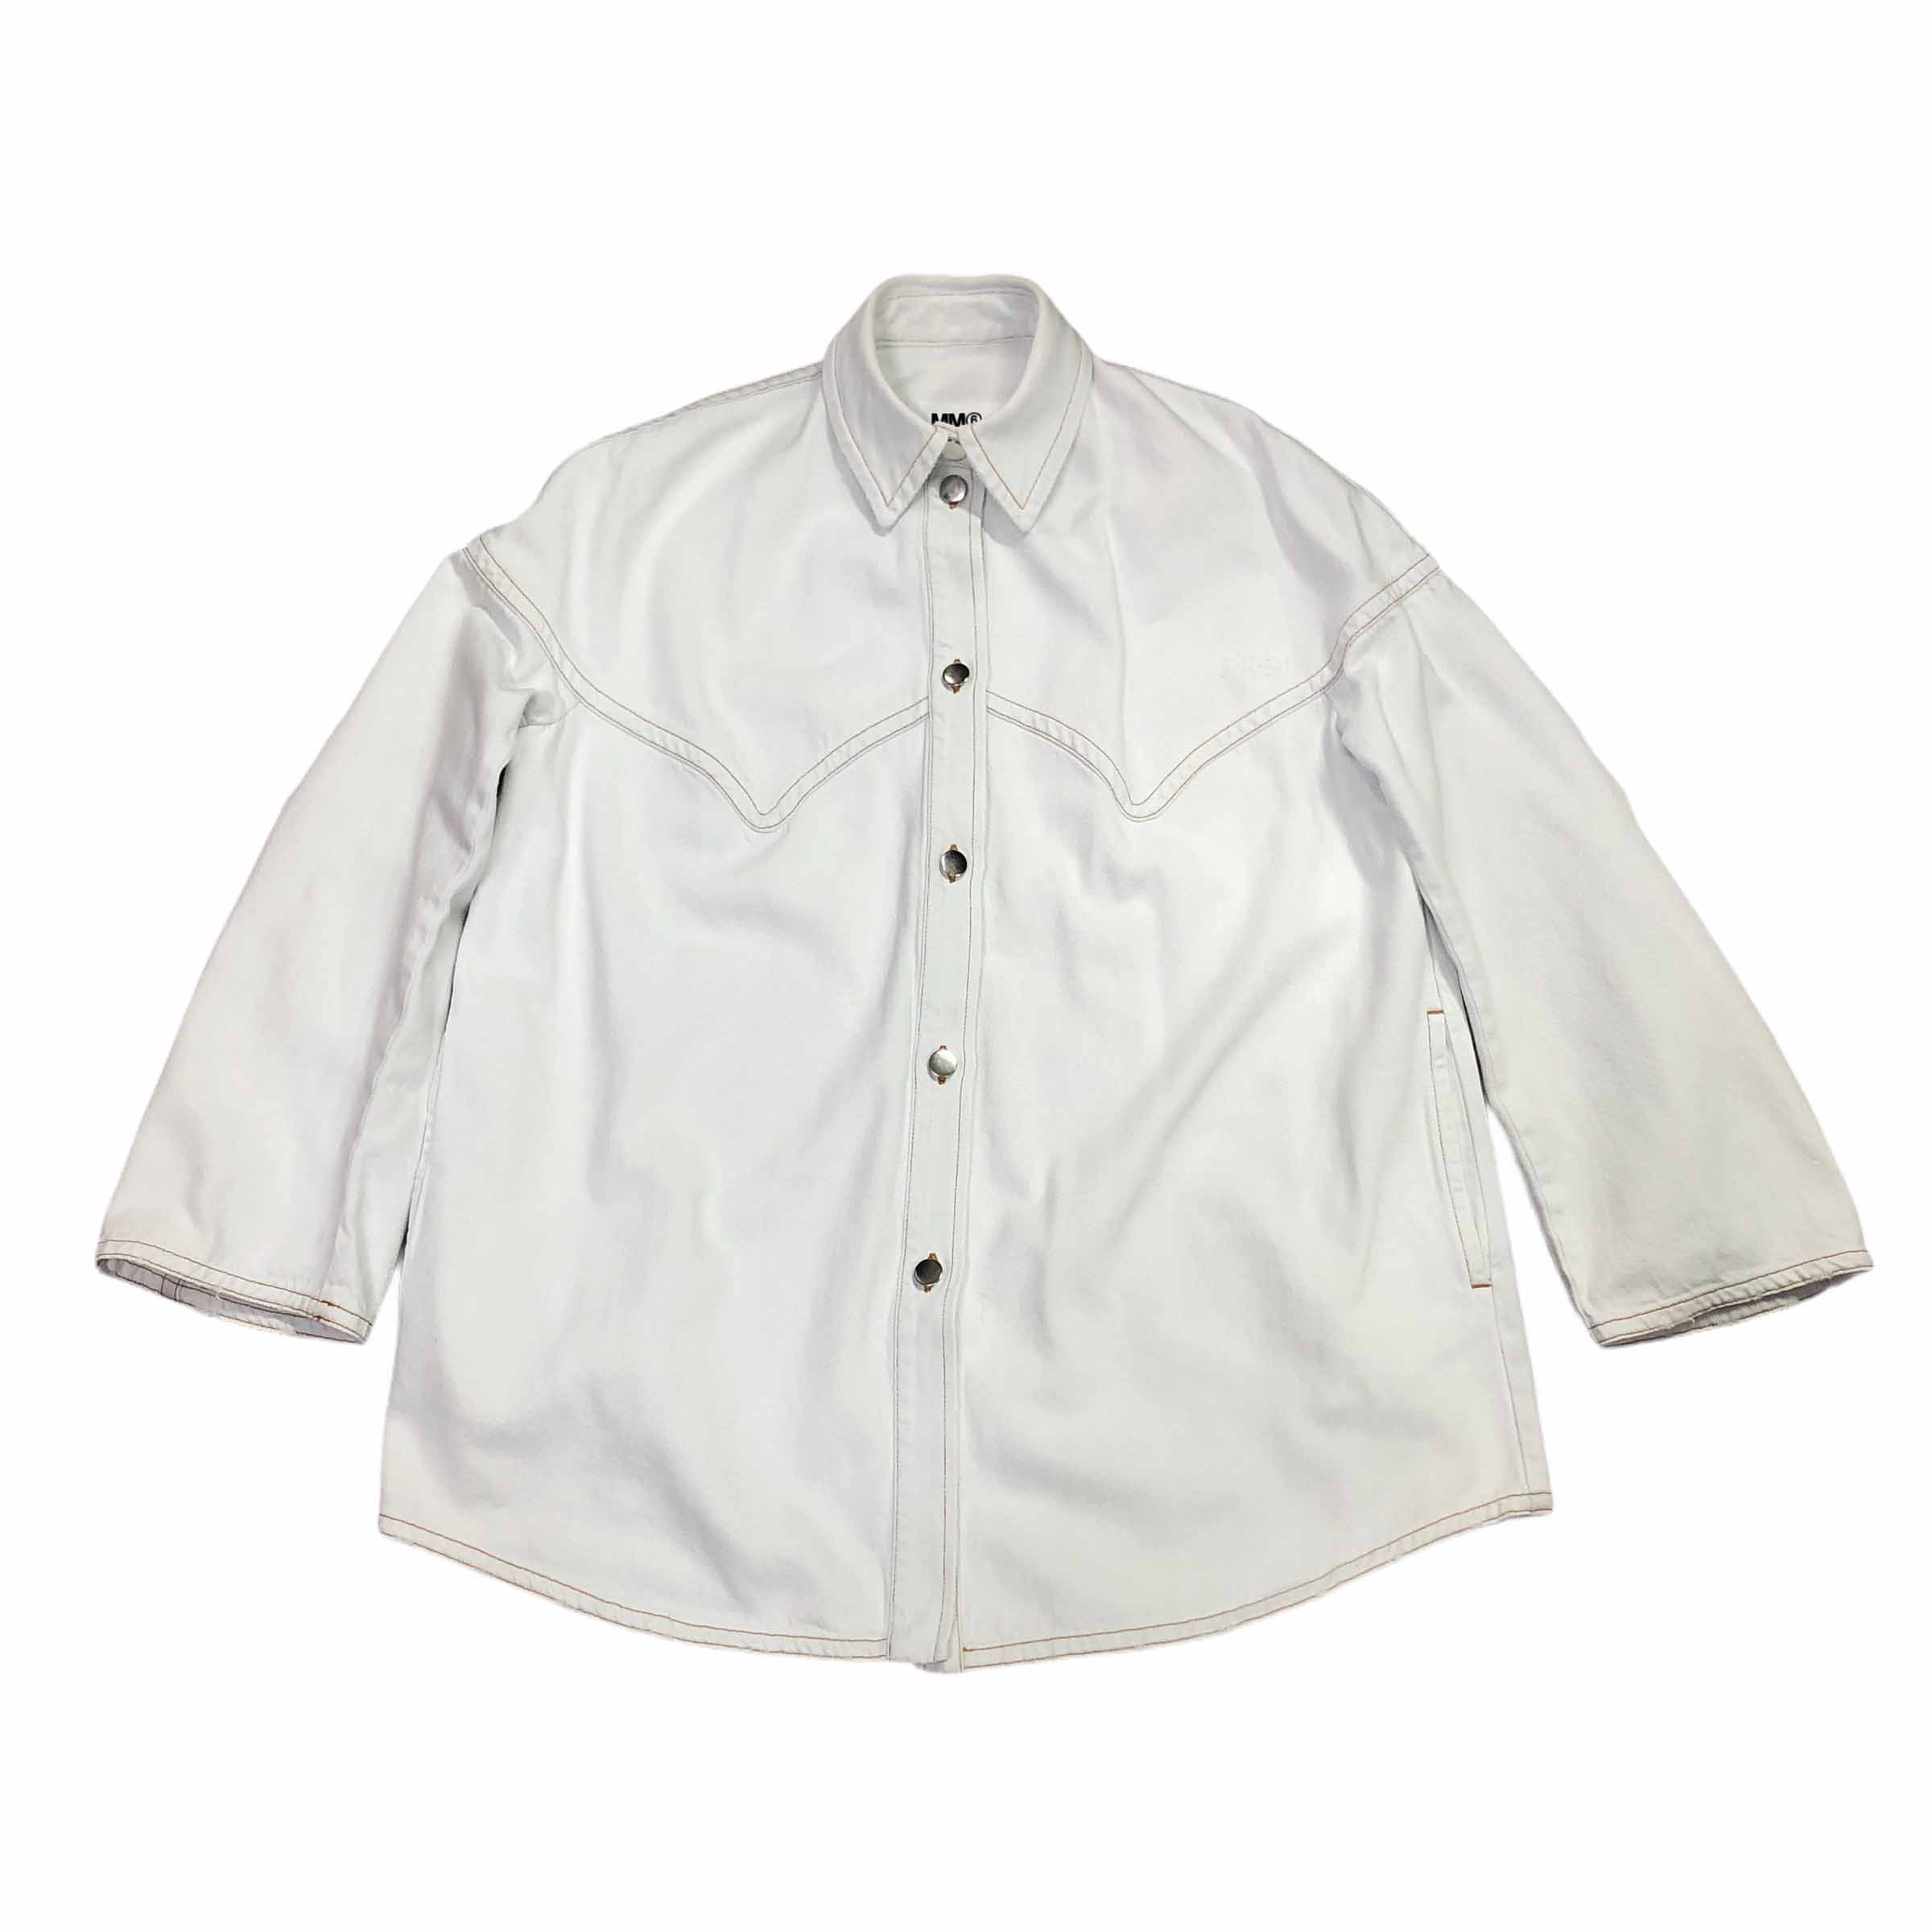 [Margiela] MM6 Destroyed White Denim Jacket - Size 40